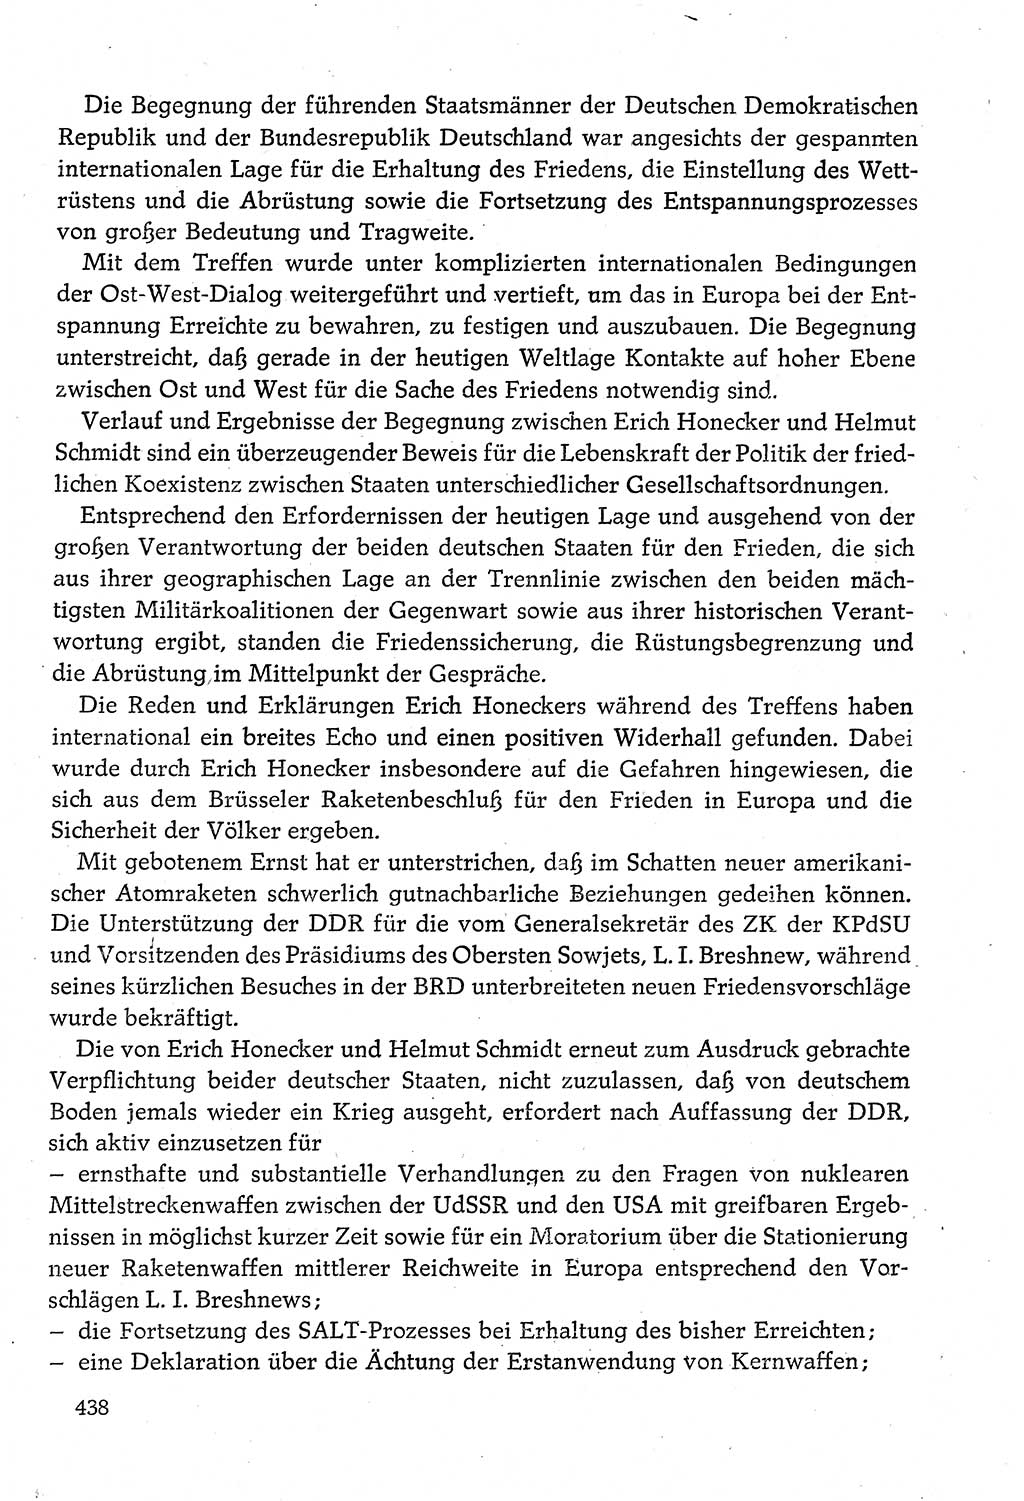 Dokumente der Sozialistischen Einheitspartei Deutschlands (SED) [Deutsche Demokratische Republik (DDR)] 1980-1981, Seite 438 (Dok. SED DDR 1980-1981, S. 438)